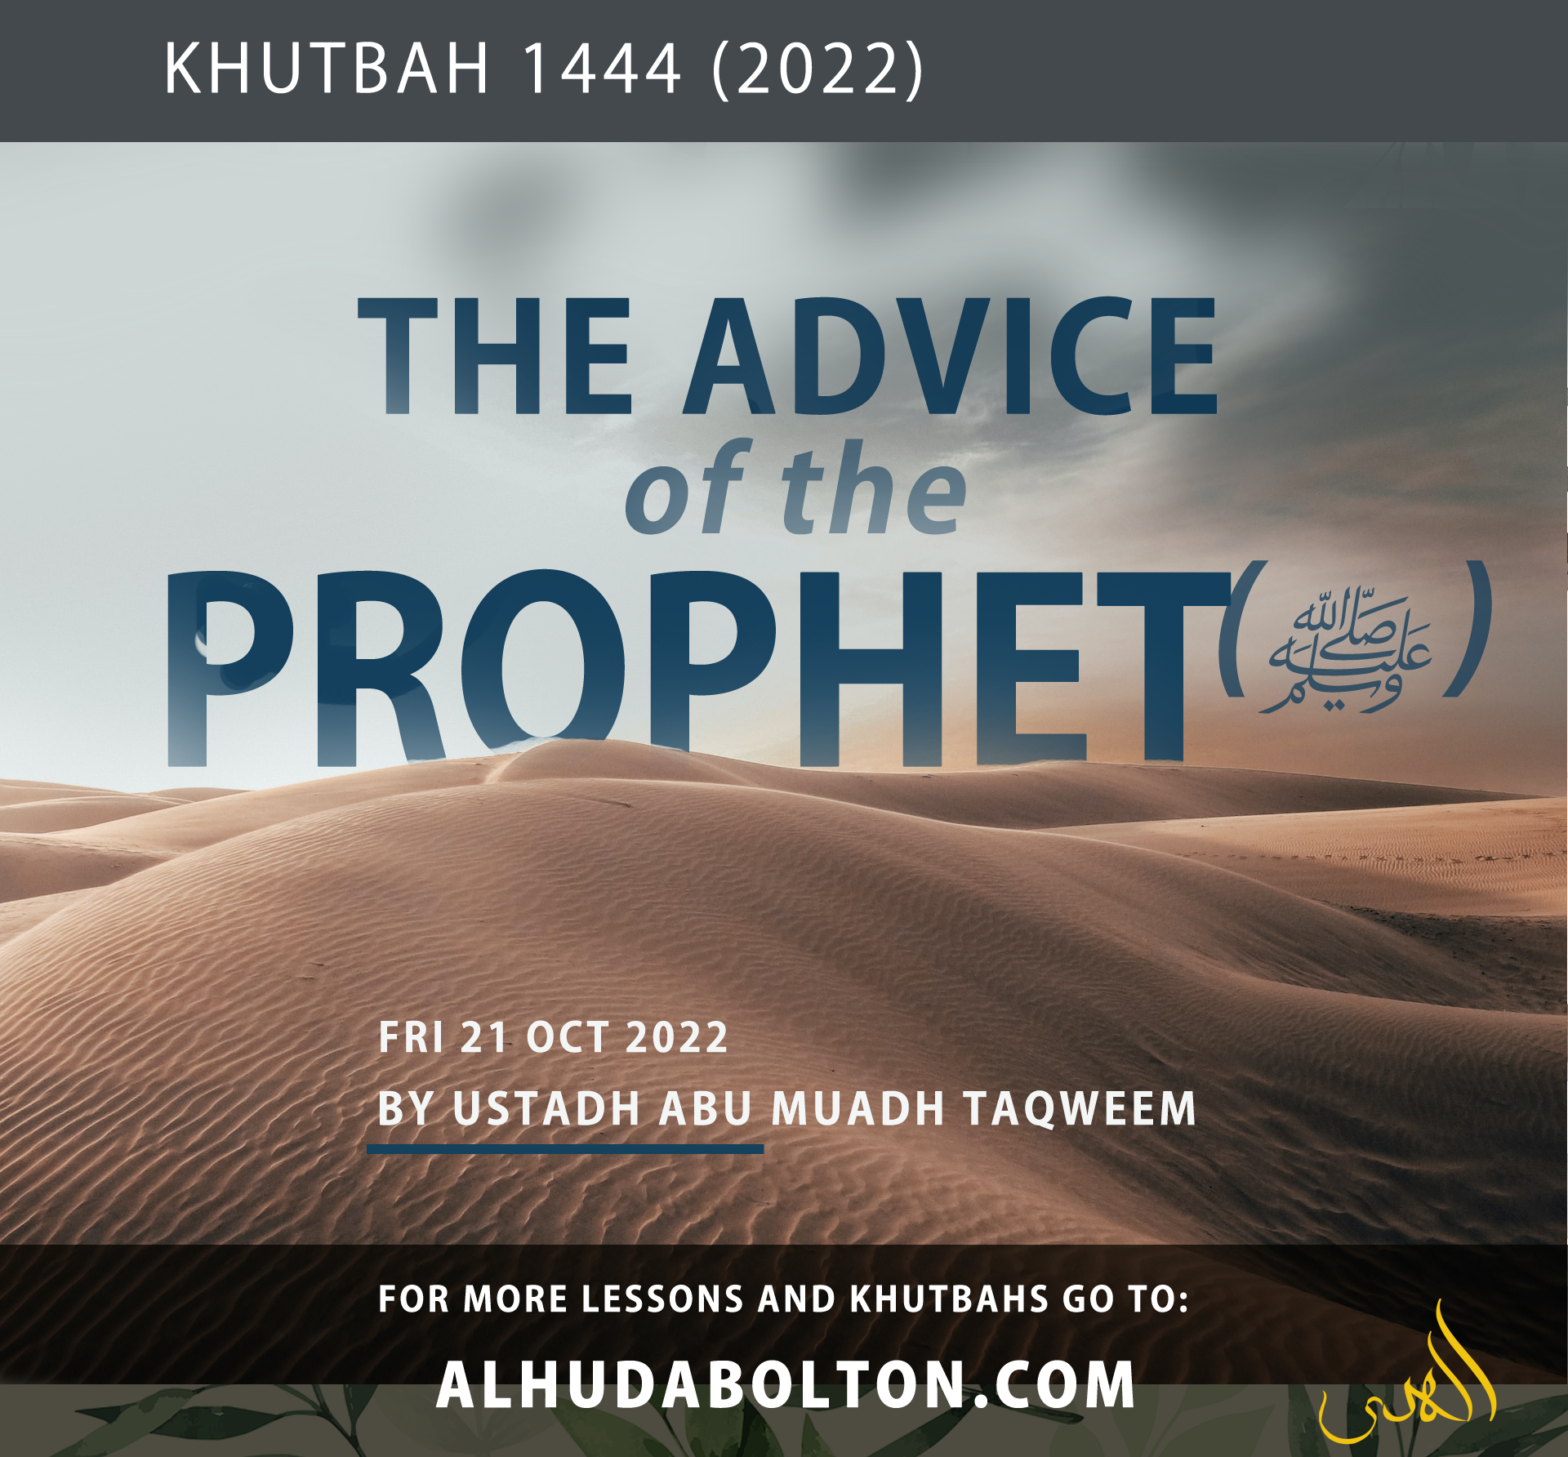 Khutbah: Advice of the Messenger of Allah (ﷺ)